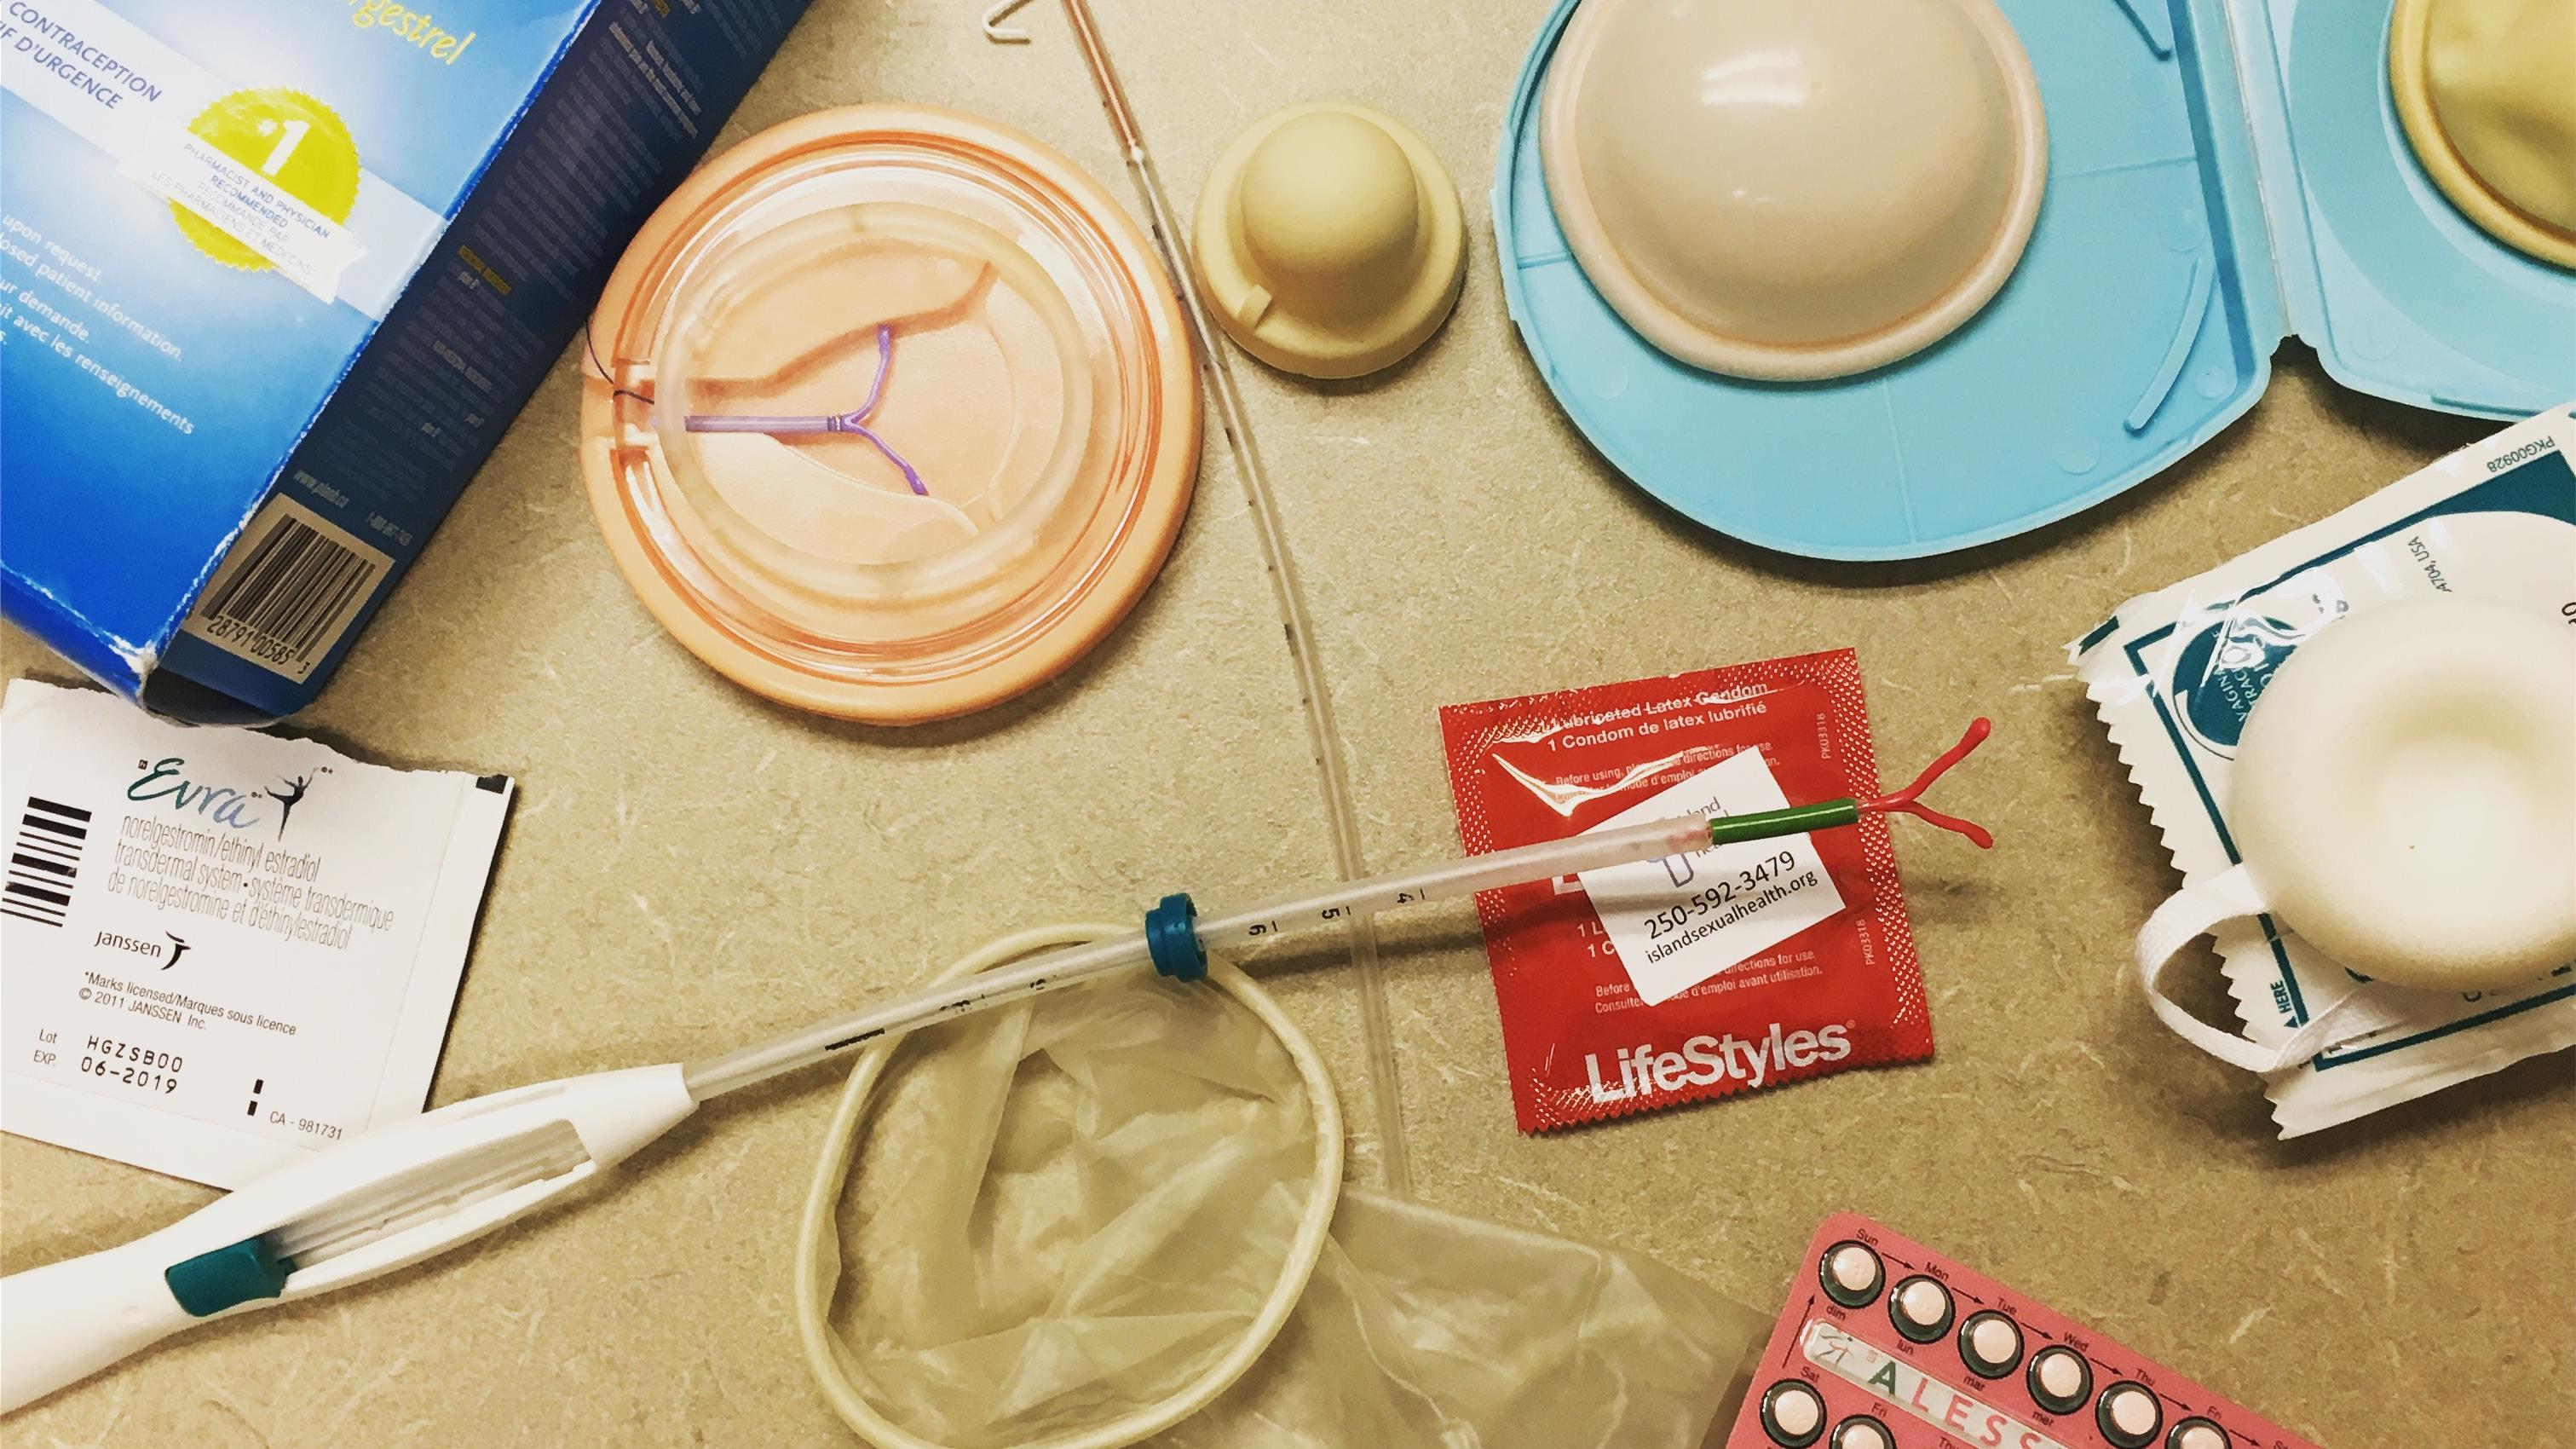 Playdoyer pour une couverture universelle des frais de contraception
Playdoyer pour une couverture universelle des frais de contraception